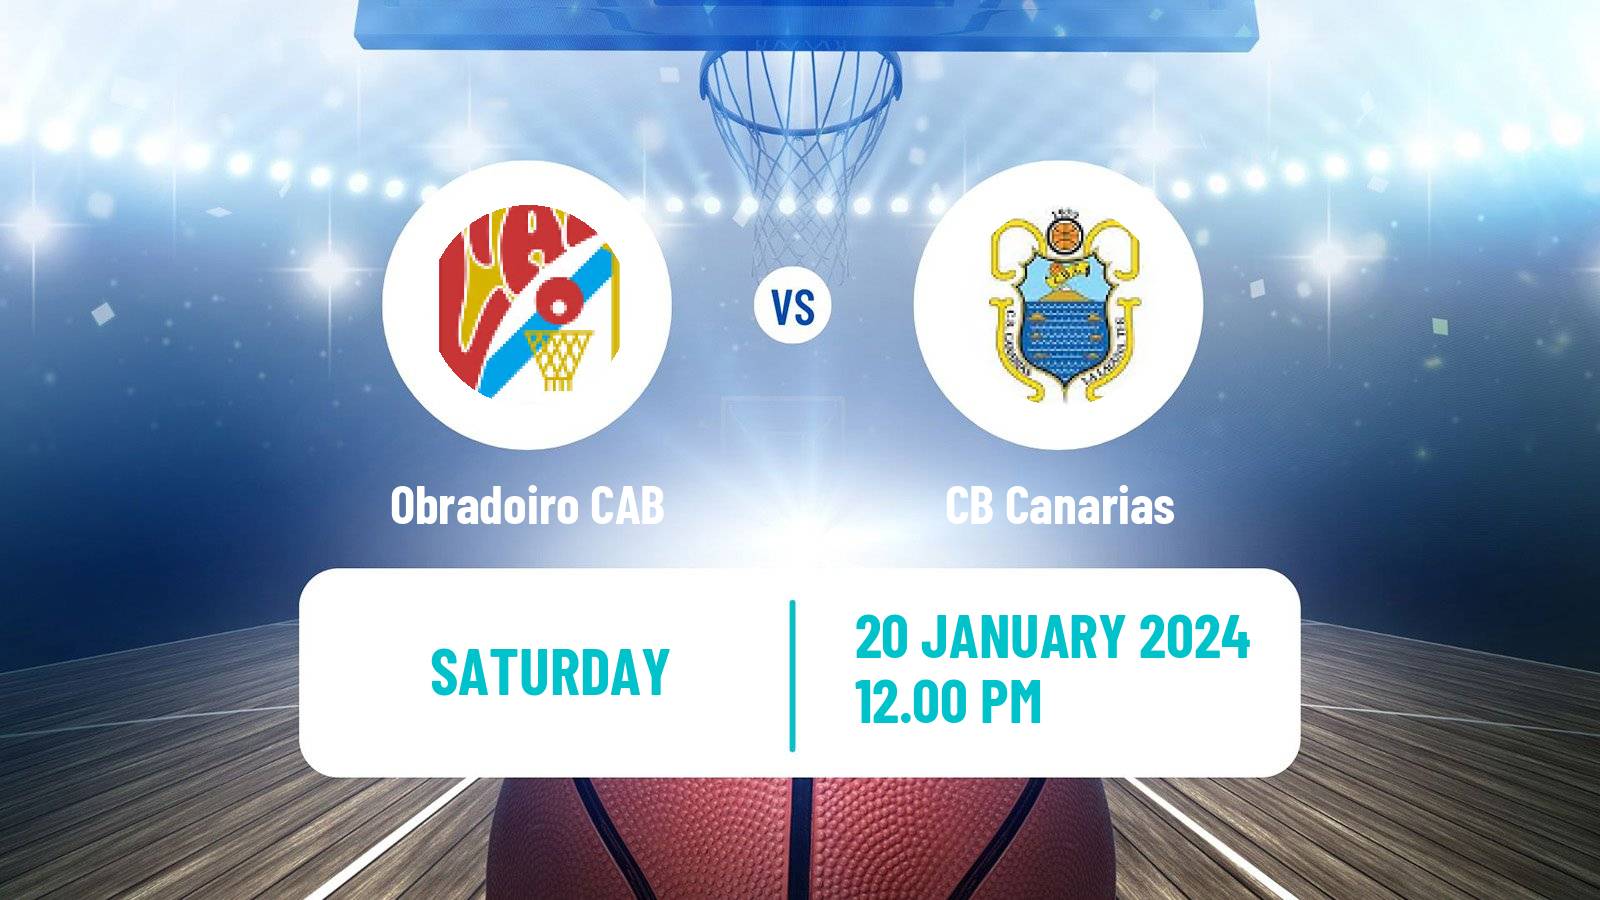 Basketball Spanish ACB League Obradoiro CAB - Canarias